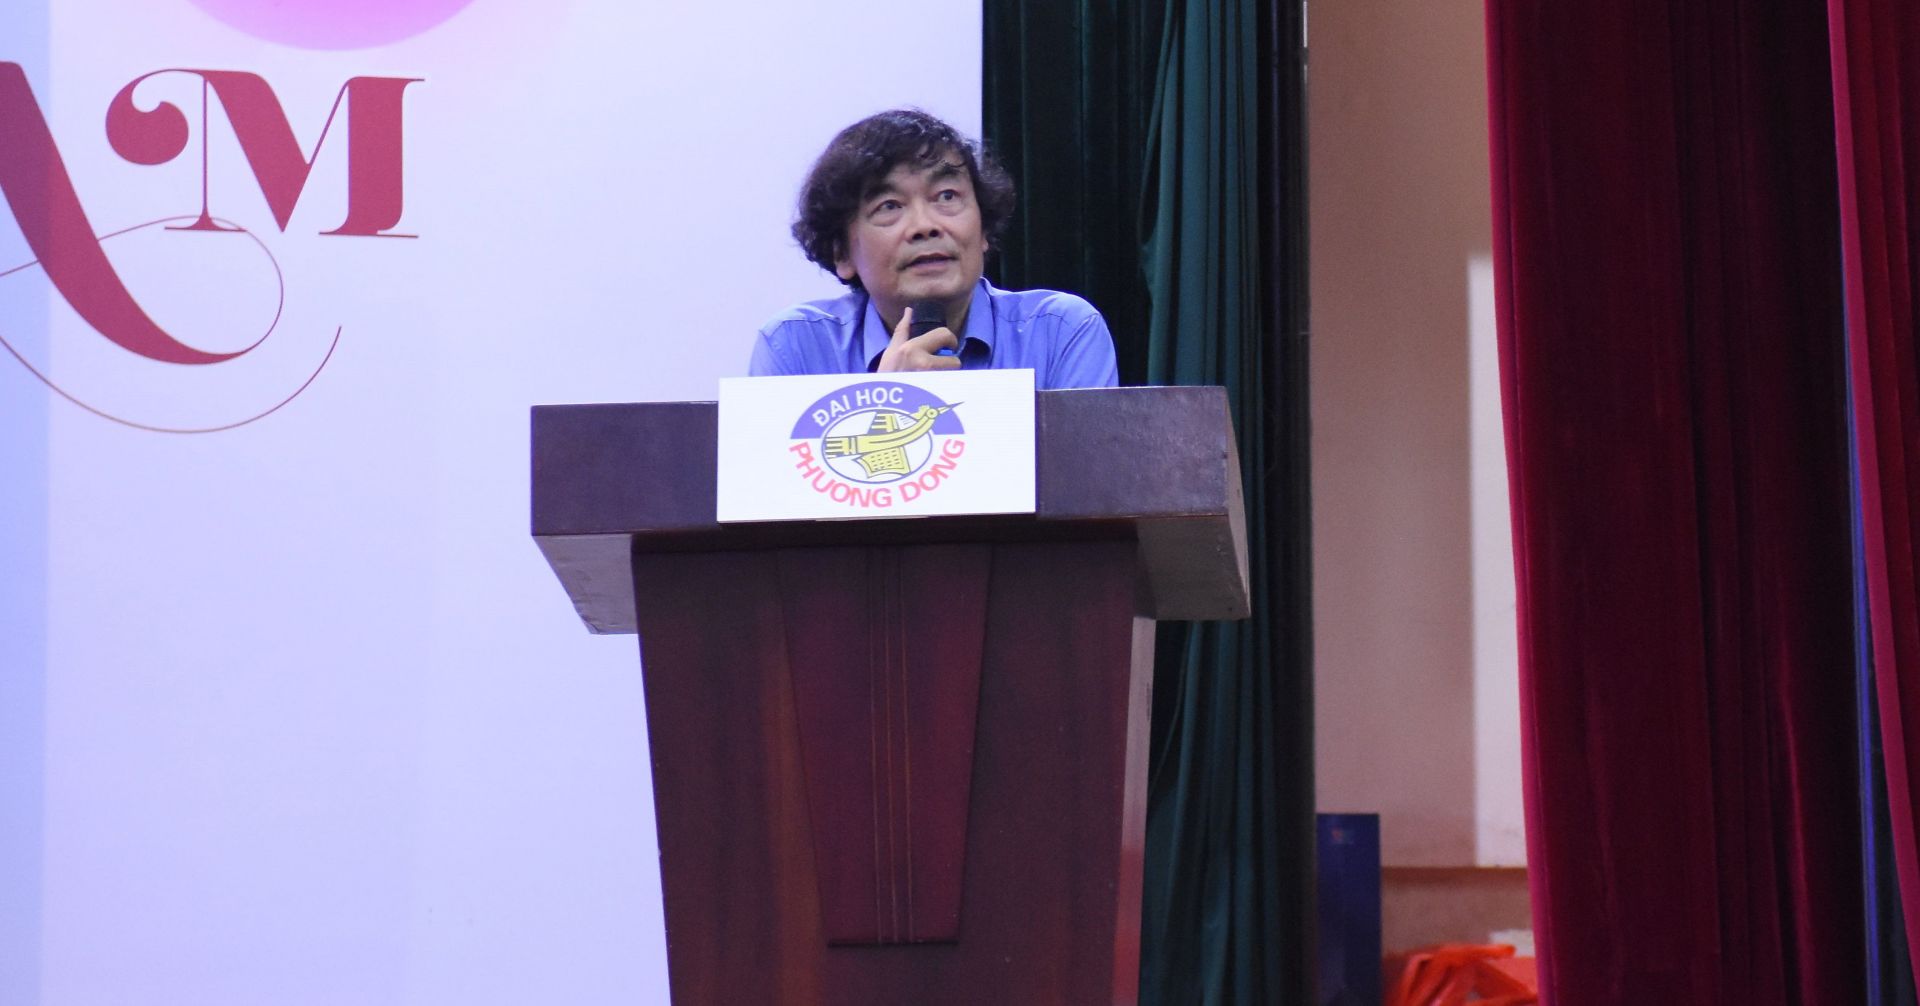 Thày Nguyễn Minh Dân nói về cơ hội các ngành học mới